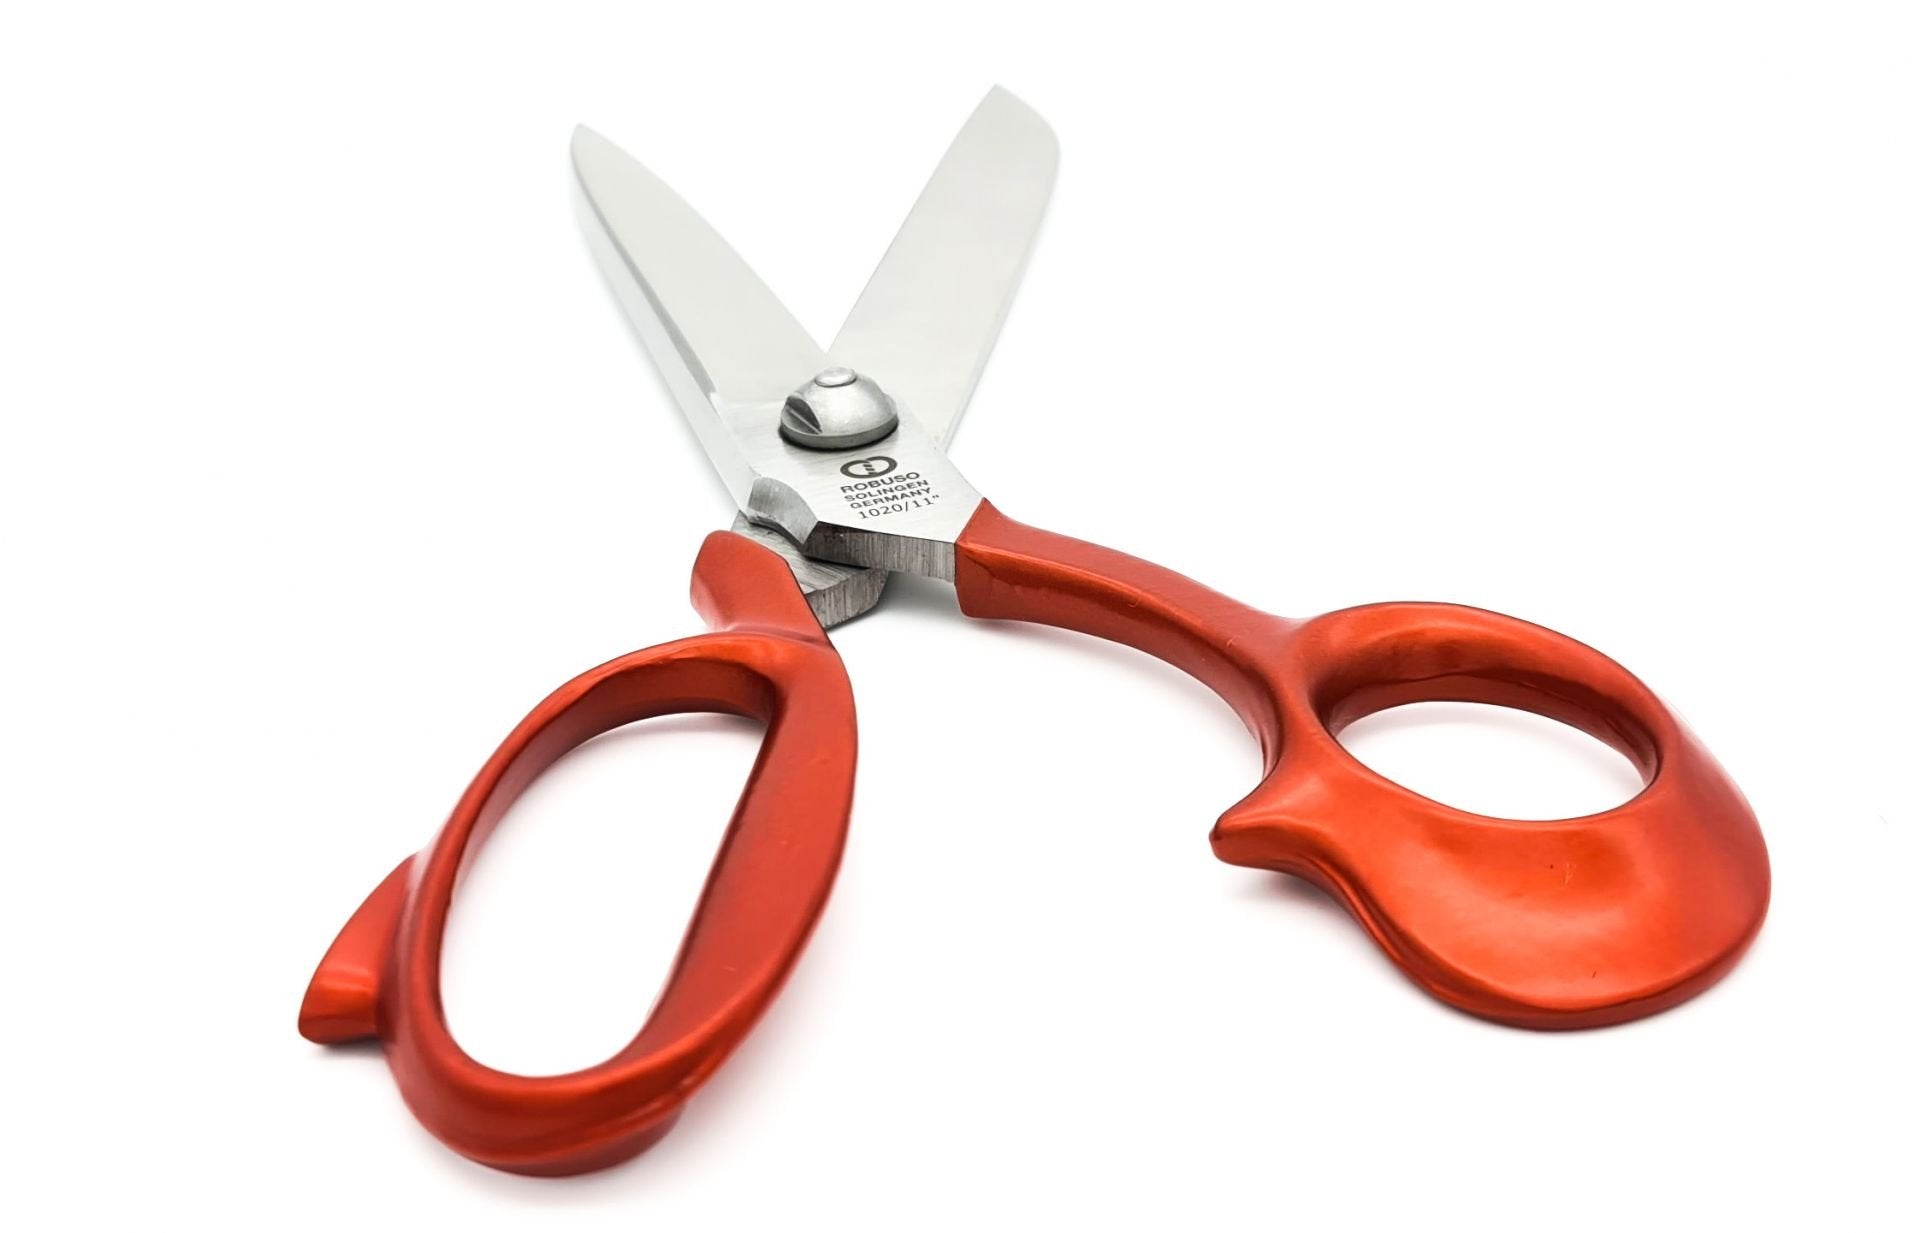 Tailor scissors, 11" / 29 cm